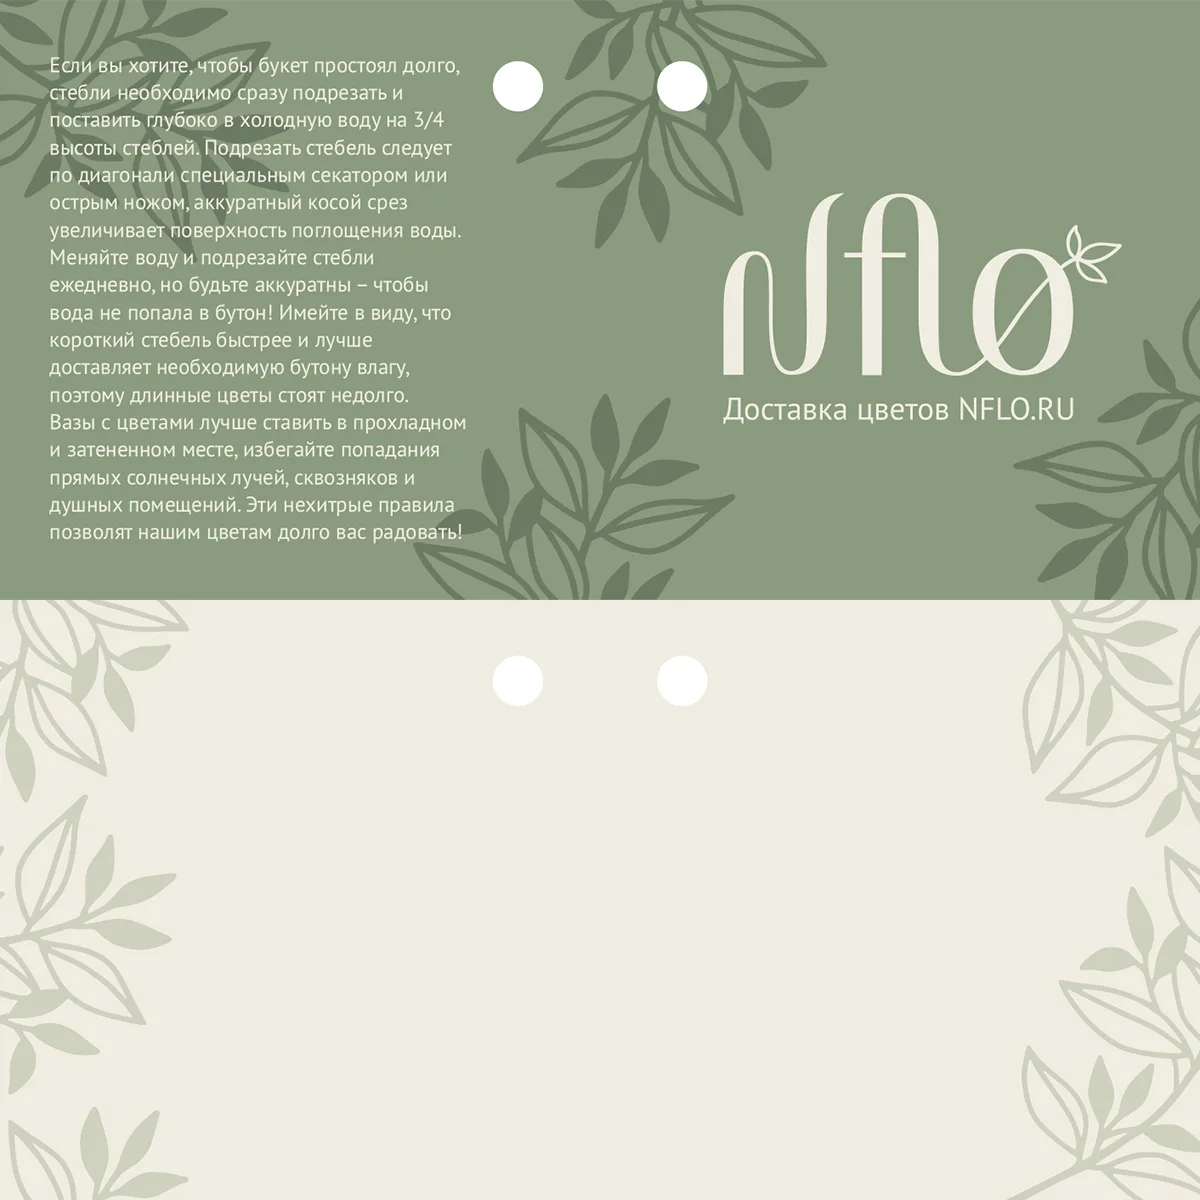 Карточка для букетов с посланием Nflo